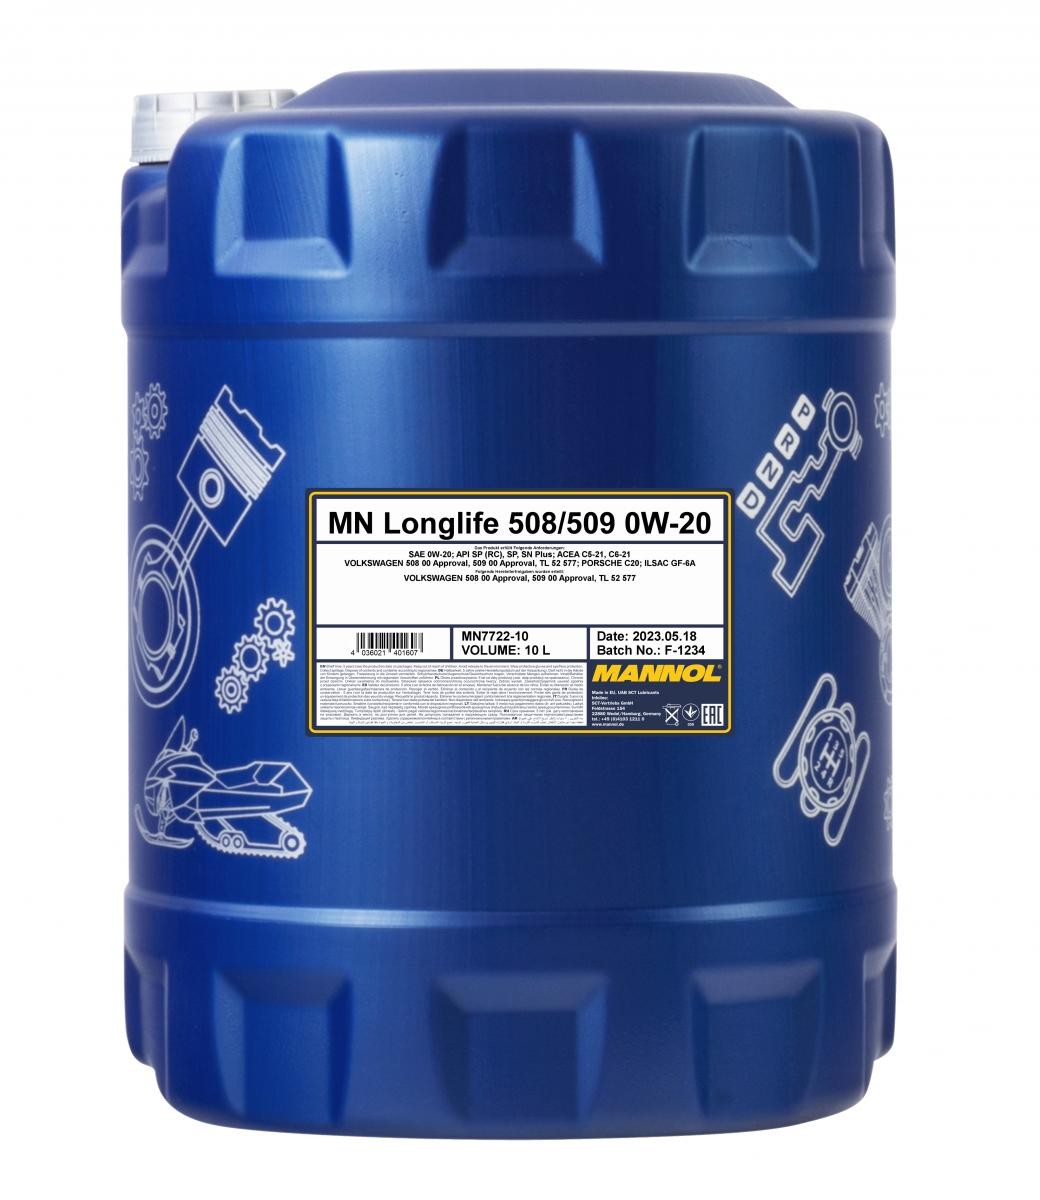 Öl 0W20 vollsynthetisches - MN7722-10 MANNOL Longlife 508/509